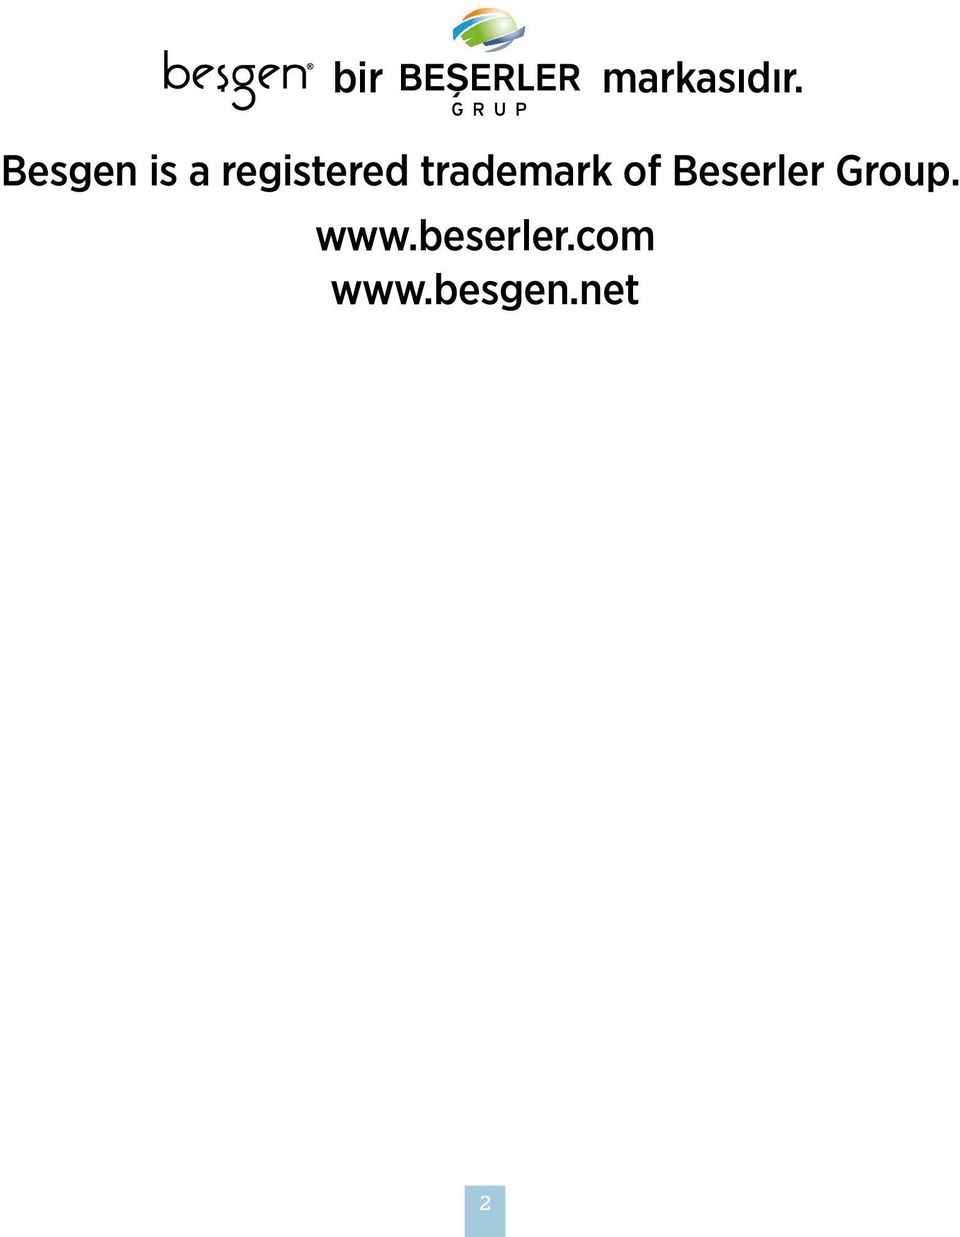 trademark of Beserler